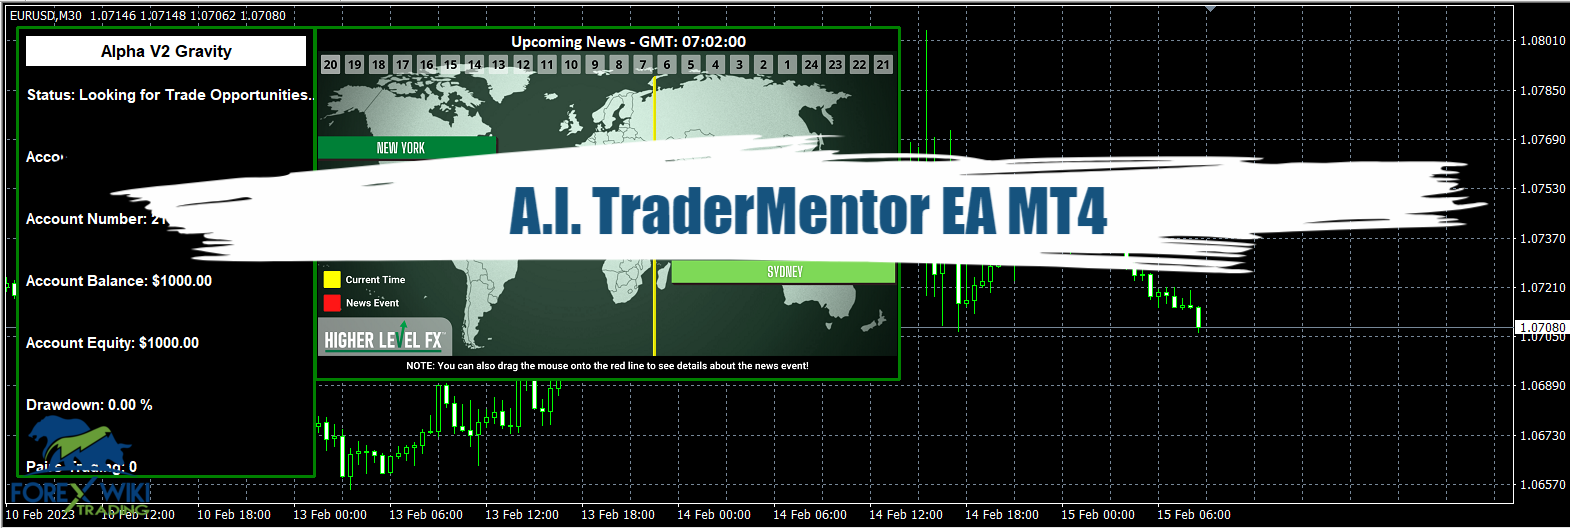 A.I. TraderMentor EA MT4 - Free Download 8